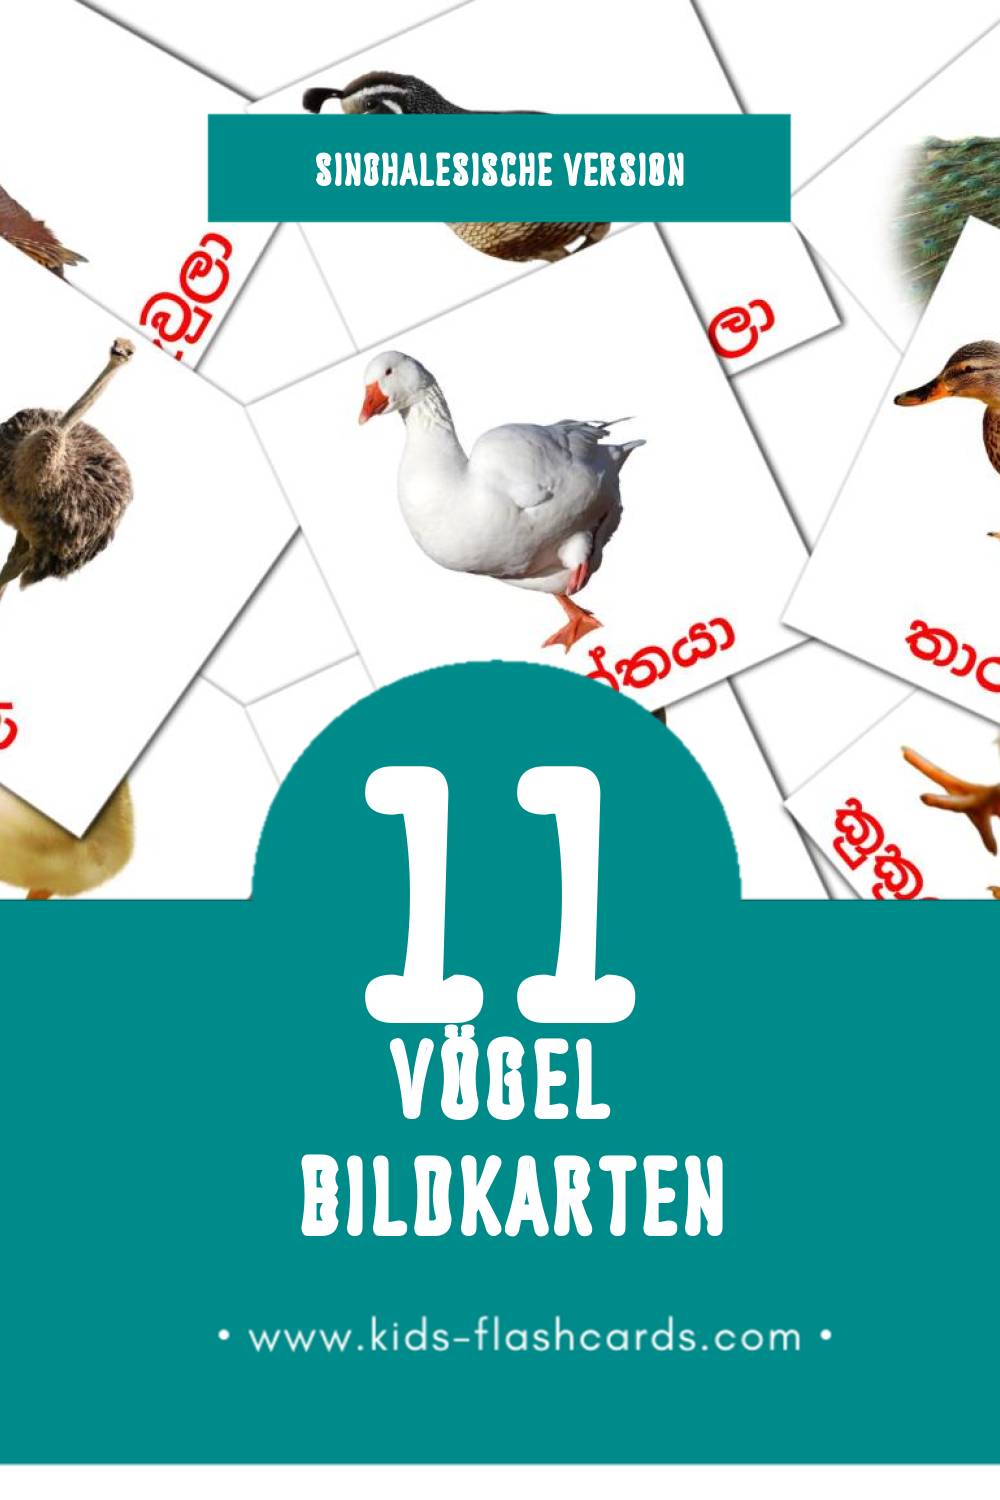 Visual කුරුල්ලන් Flashcards für Kleinkinder (11 Karten in Singhalesisch)